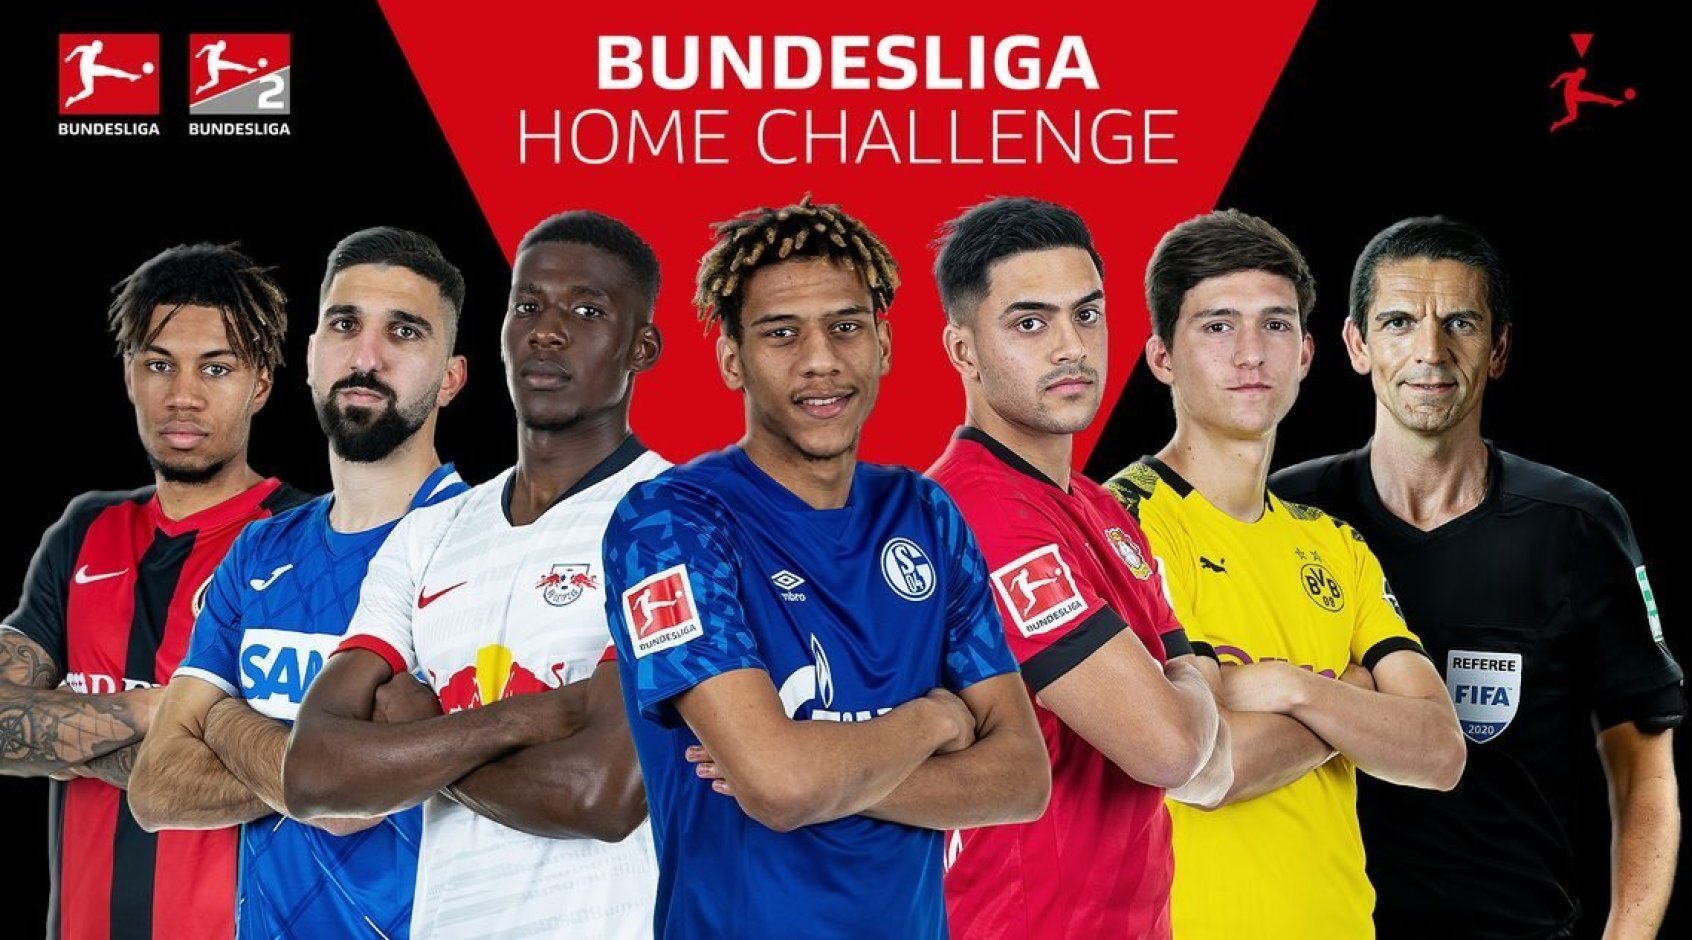 Киберфутбол. FIFA 20. Бундеслига. #BundesligaHomeChallenge. 3-я игровая неделя. Результаты матчей субботы